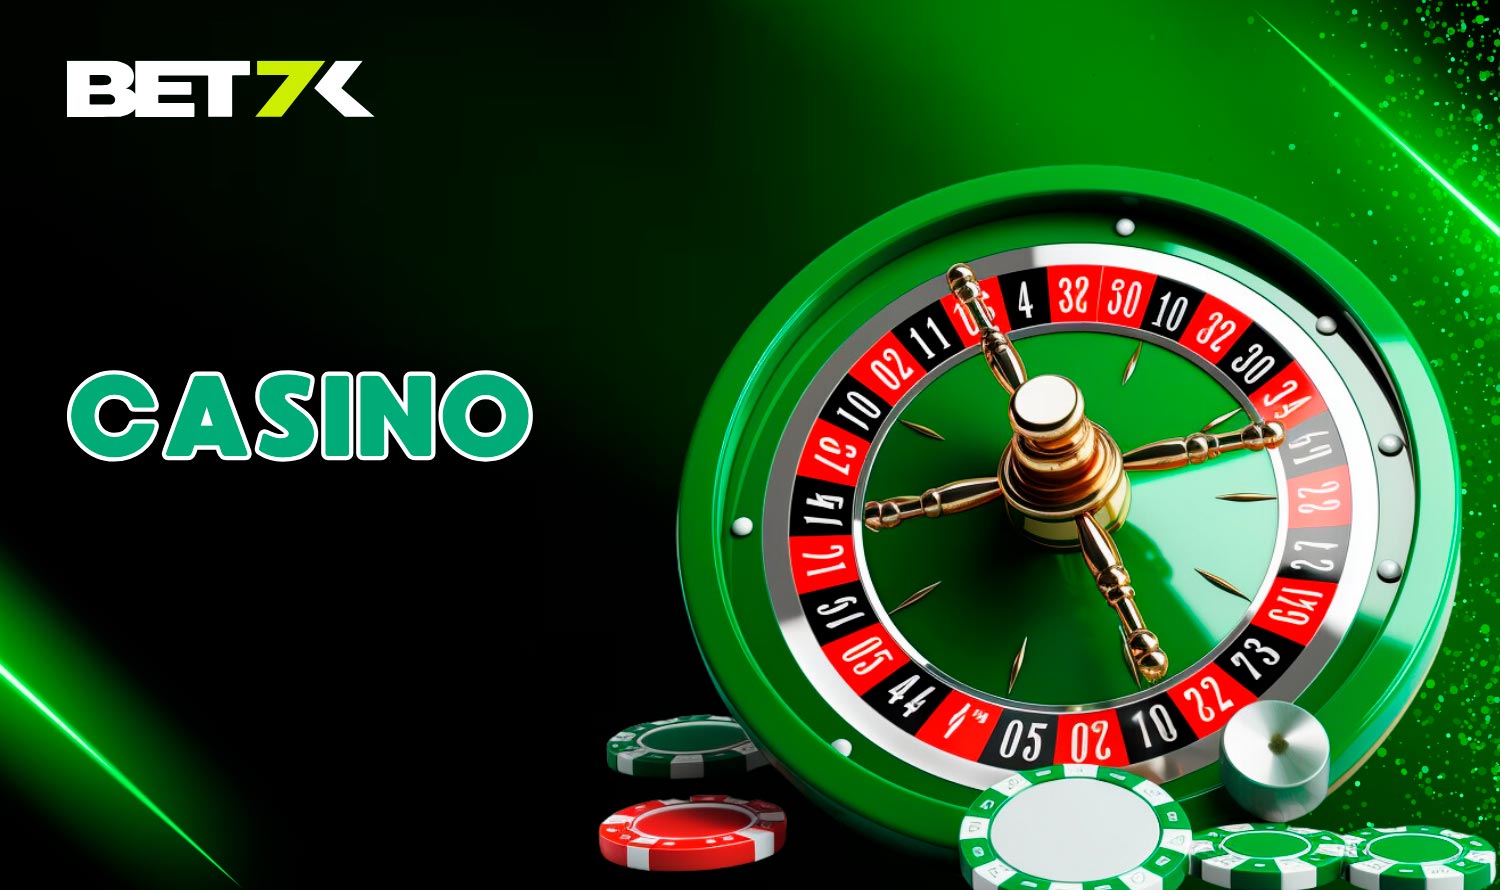 Jogue no Cassino Bet7k - Slots, Jogos de Mesa e Cassino Ao Vivo